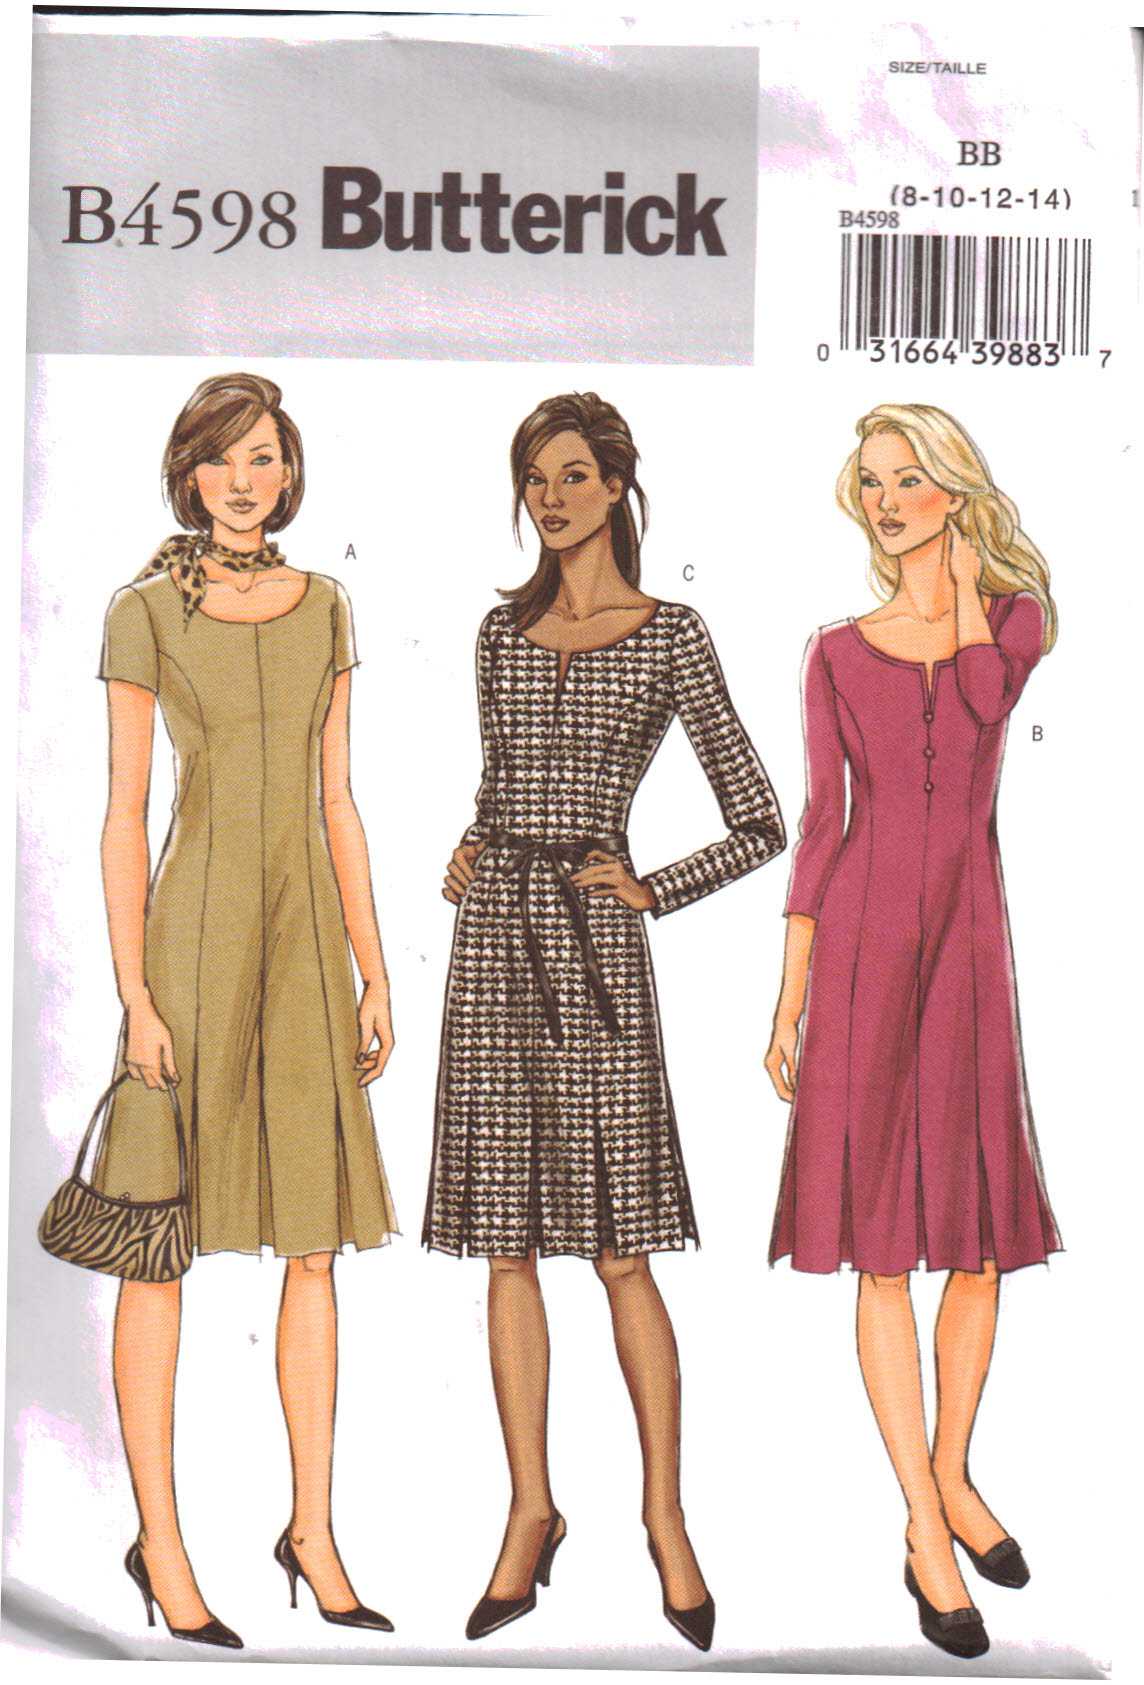 Butterick B4598 Dress Size: BB 8-10-12-14 Uncut Sewing Pattern